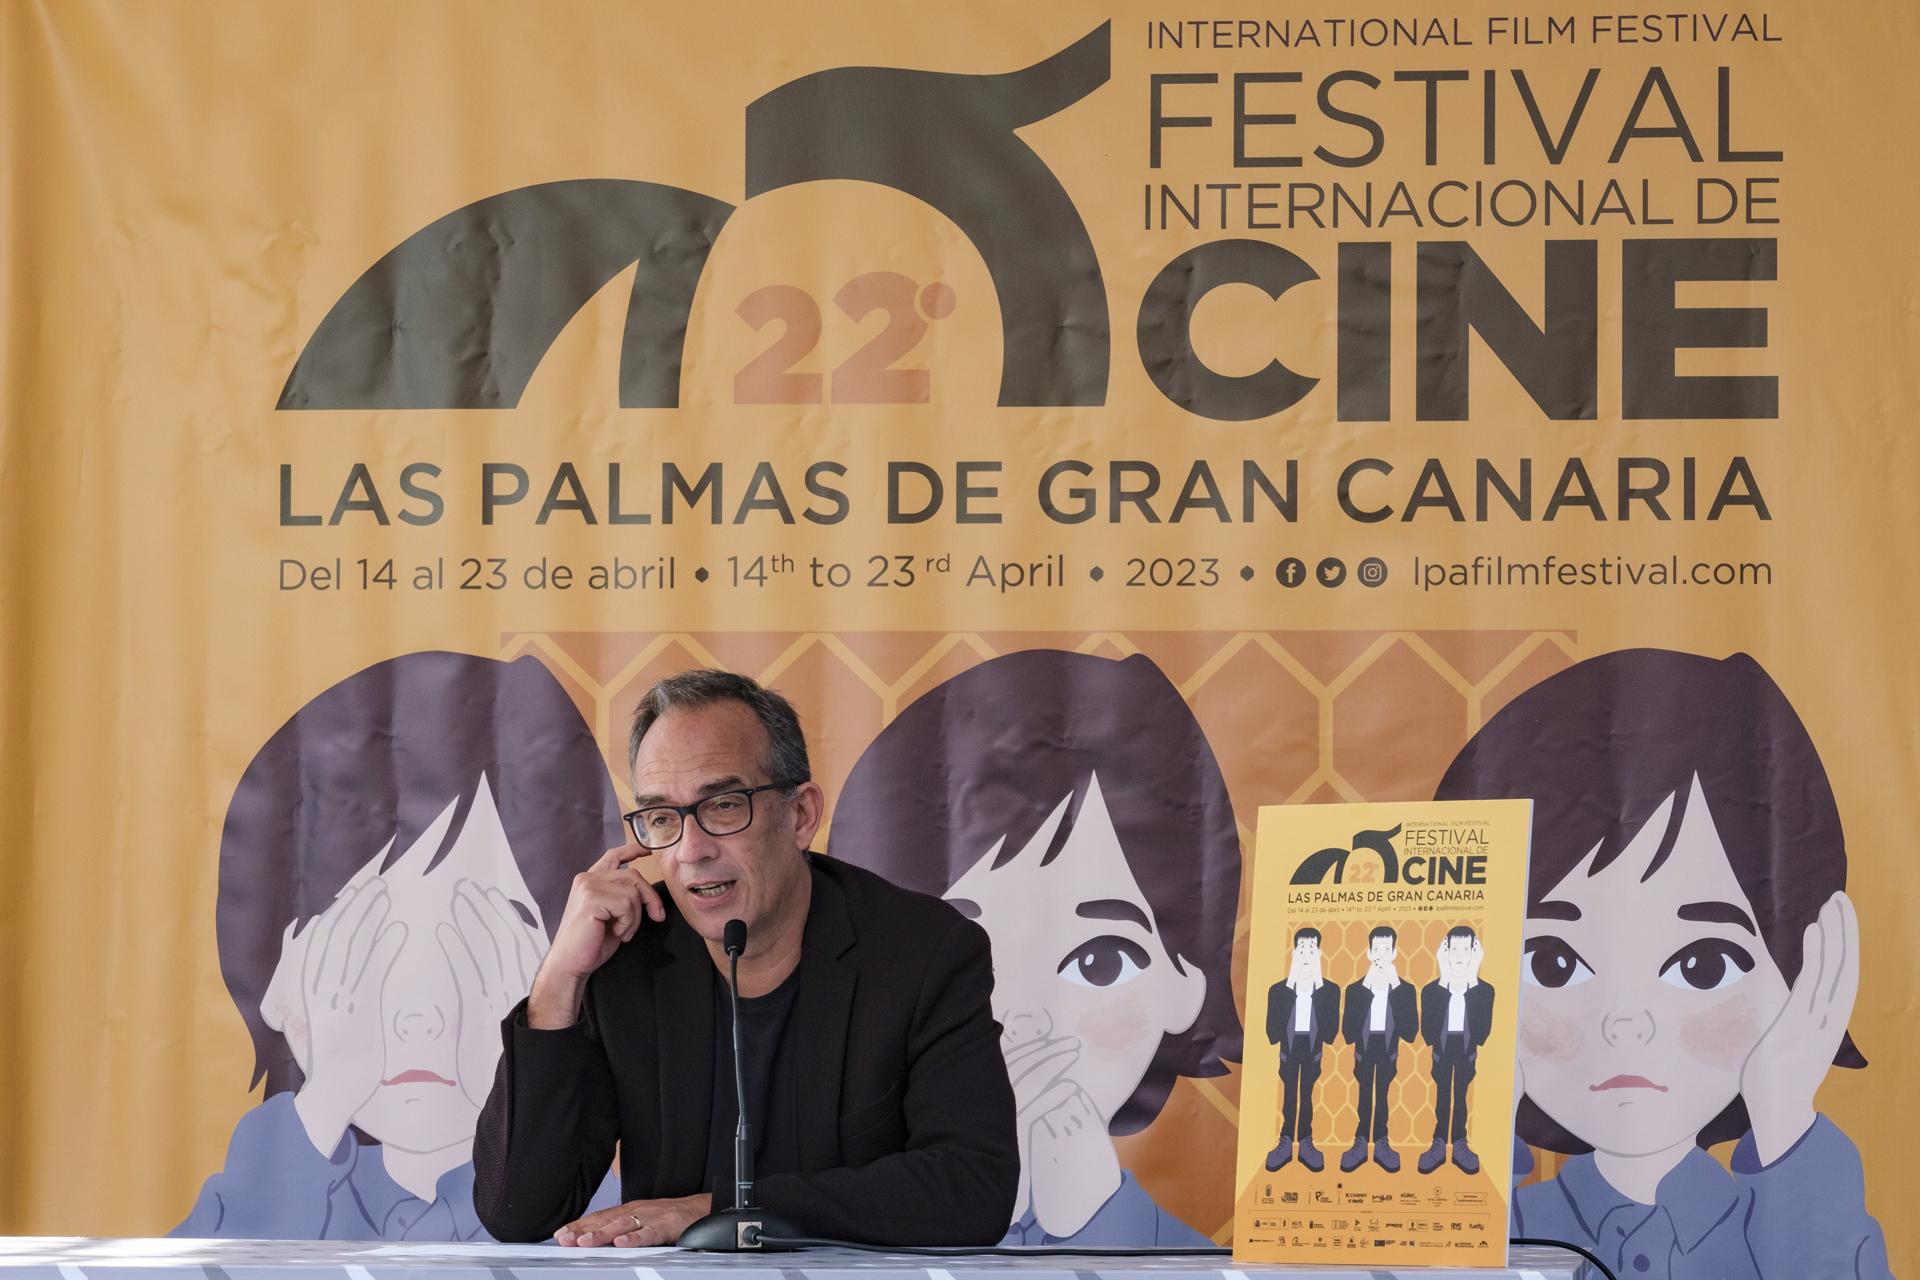 El director del Festival Internacional de Cine de Las Palmas de Gran Canaria, Luis Miranda, ha presentado este martes el cartel y un avance de contenidos de este festival que cumple su edición número 22. EFE/Angel Medina G.